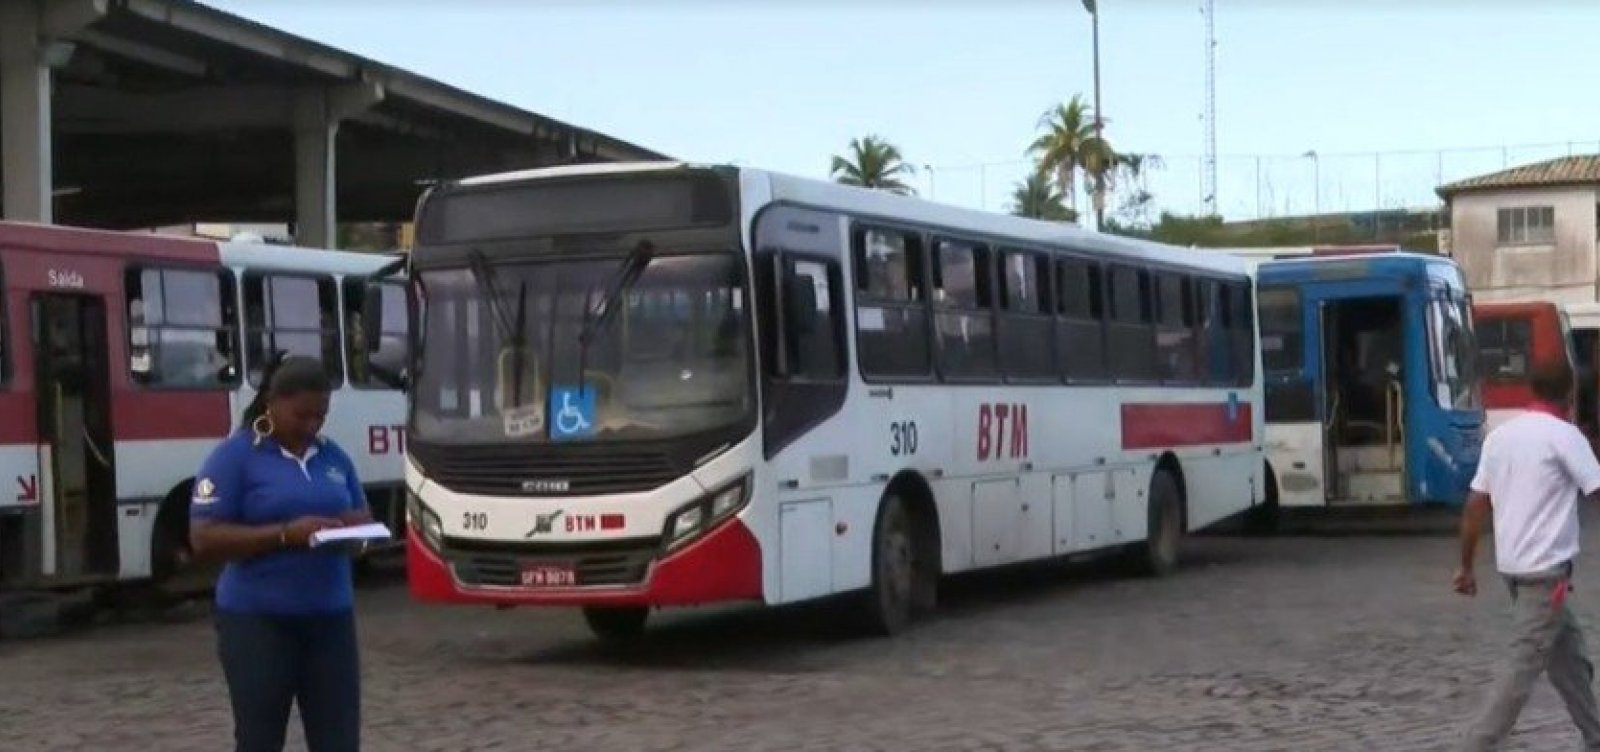 Ônibus da empresa BTM não circulam por falta de combustível, dizem rodoviários 